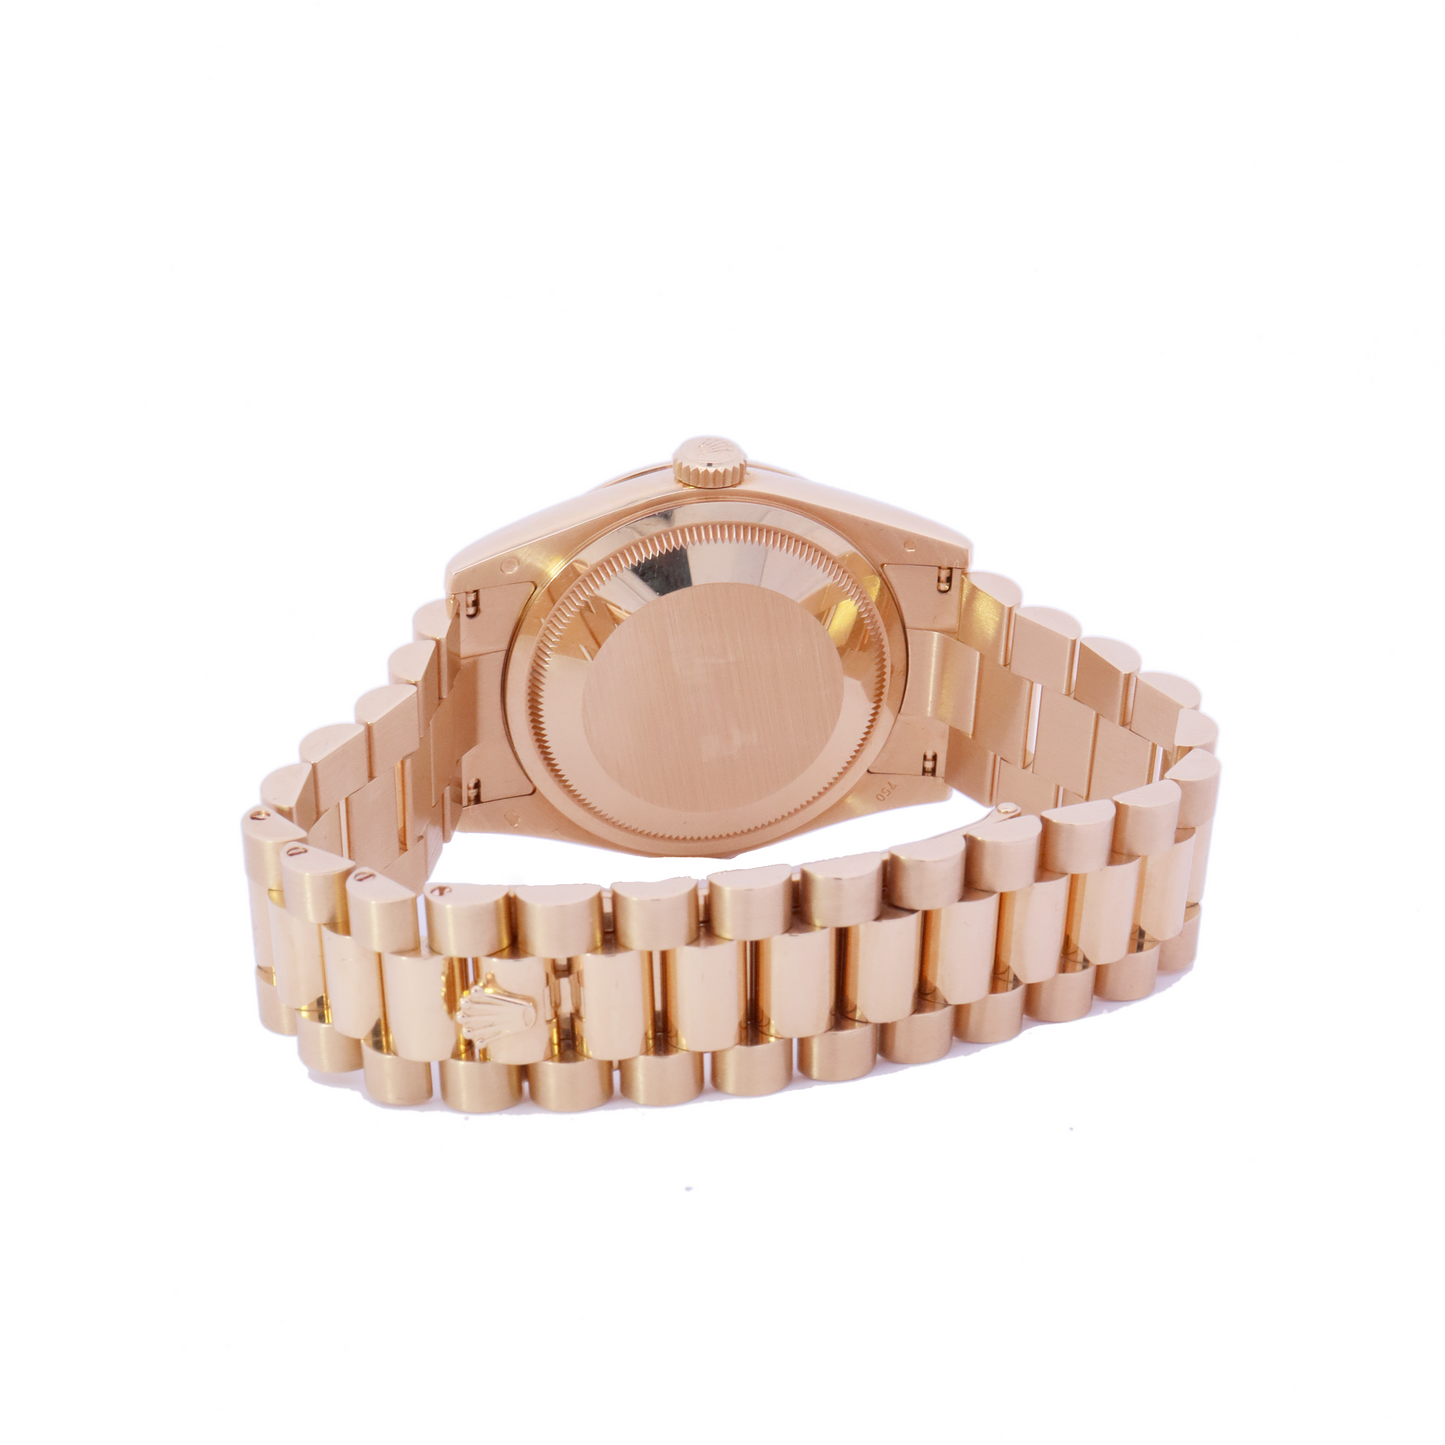 Rolex Day-Date Yellow Gold Diamond Dial Watch | Ref# 118238 - Happy Jewelers Fine Jewelry Lifetime Warranty